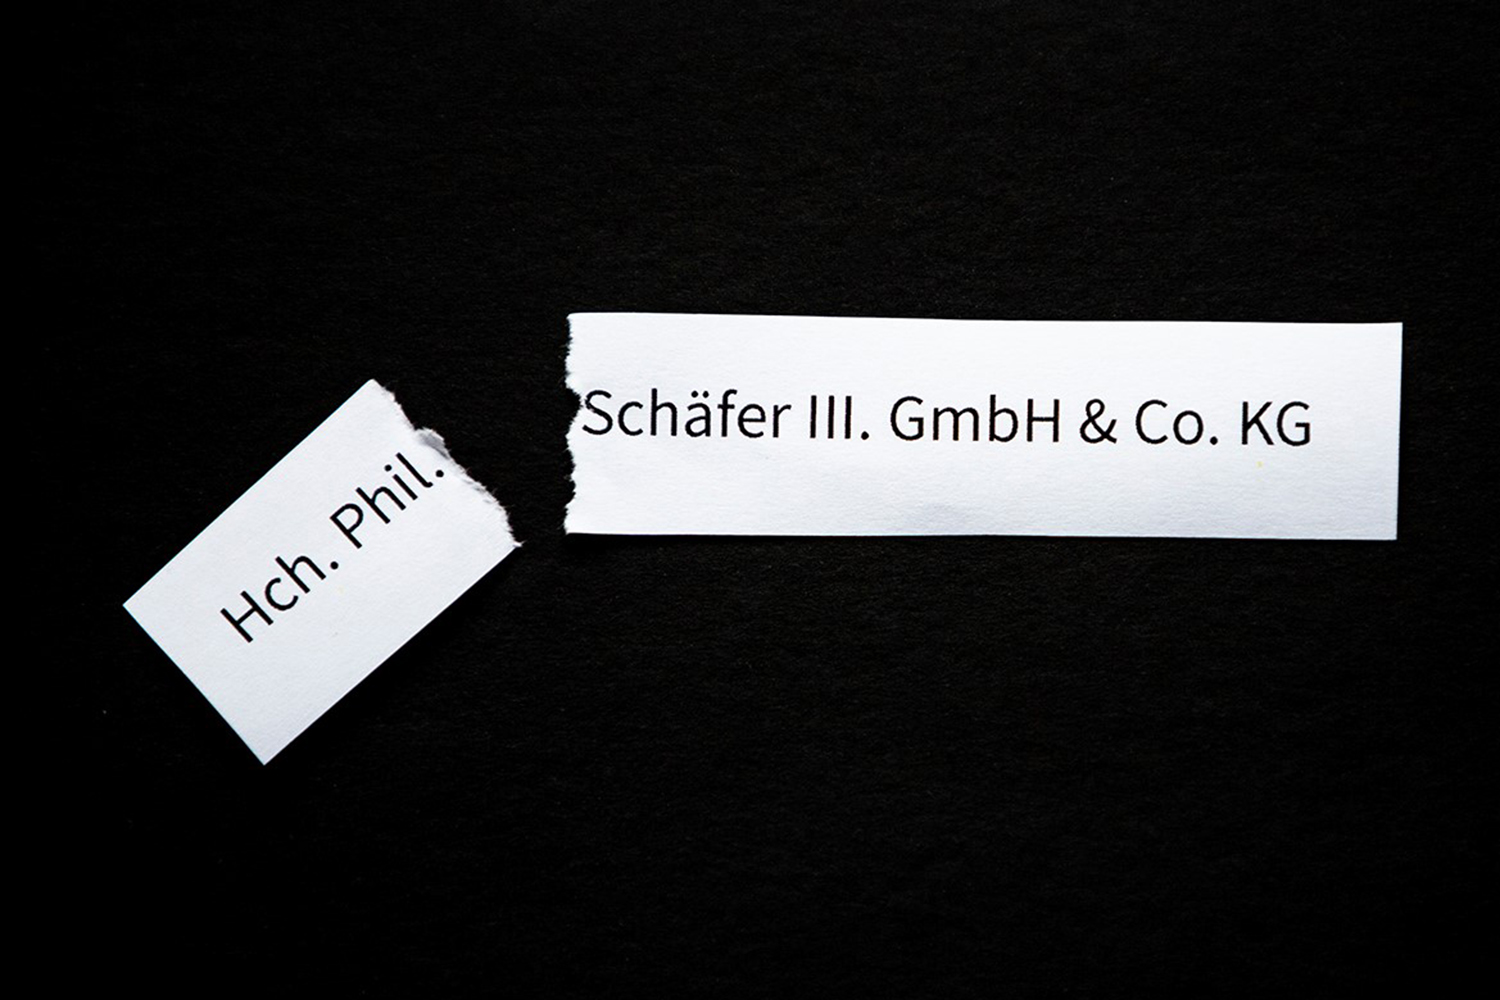 Neuer Firmenname für Schäfer III